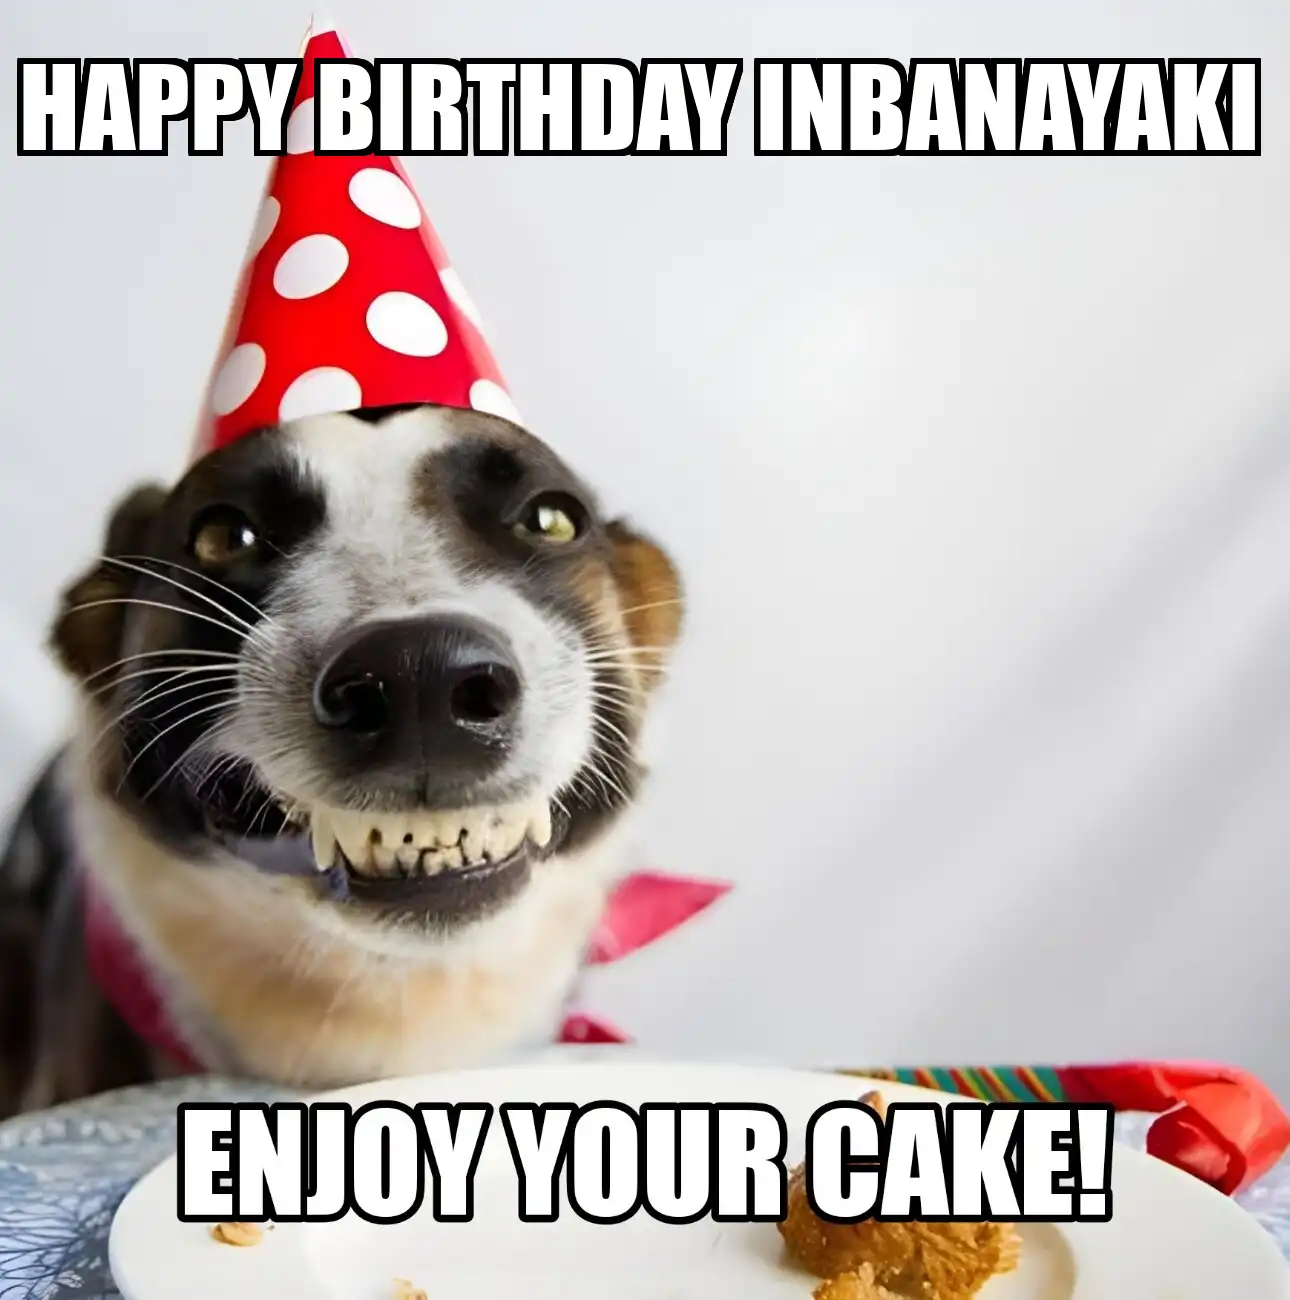 Happy Birthday Inbanayaki Enjoy Your Cake Dog Meme